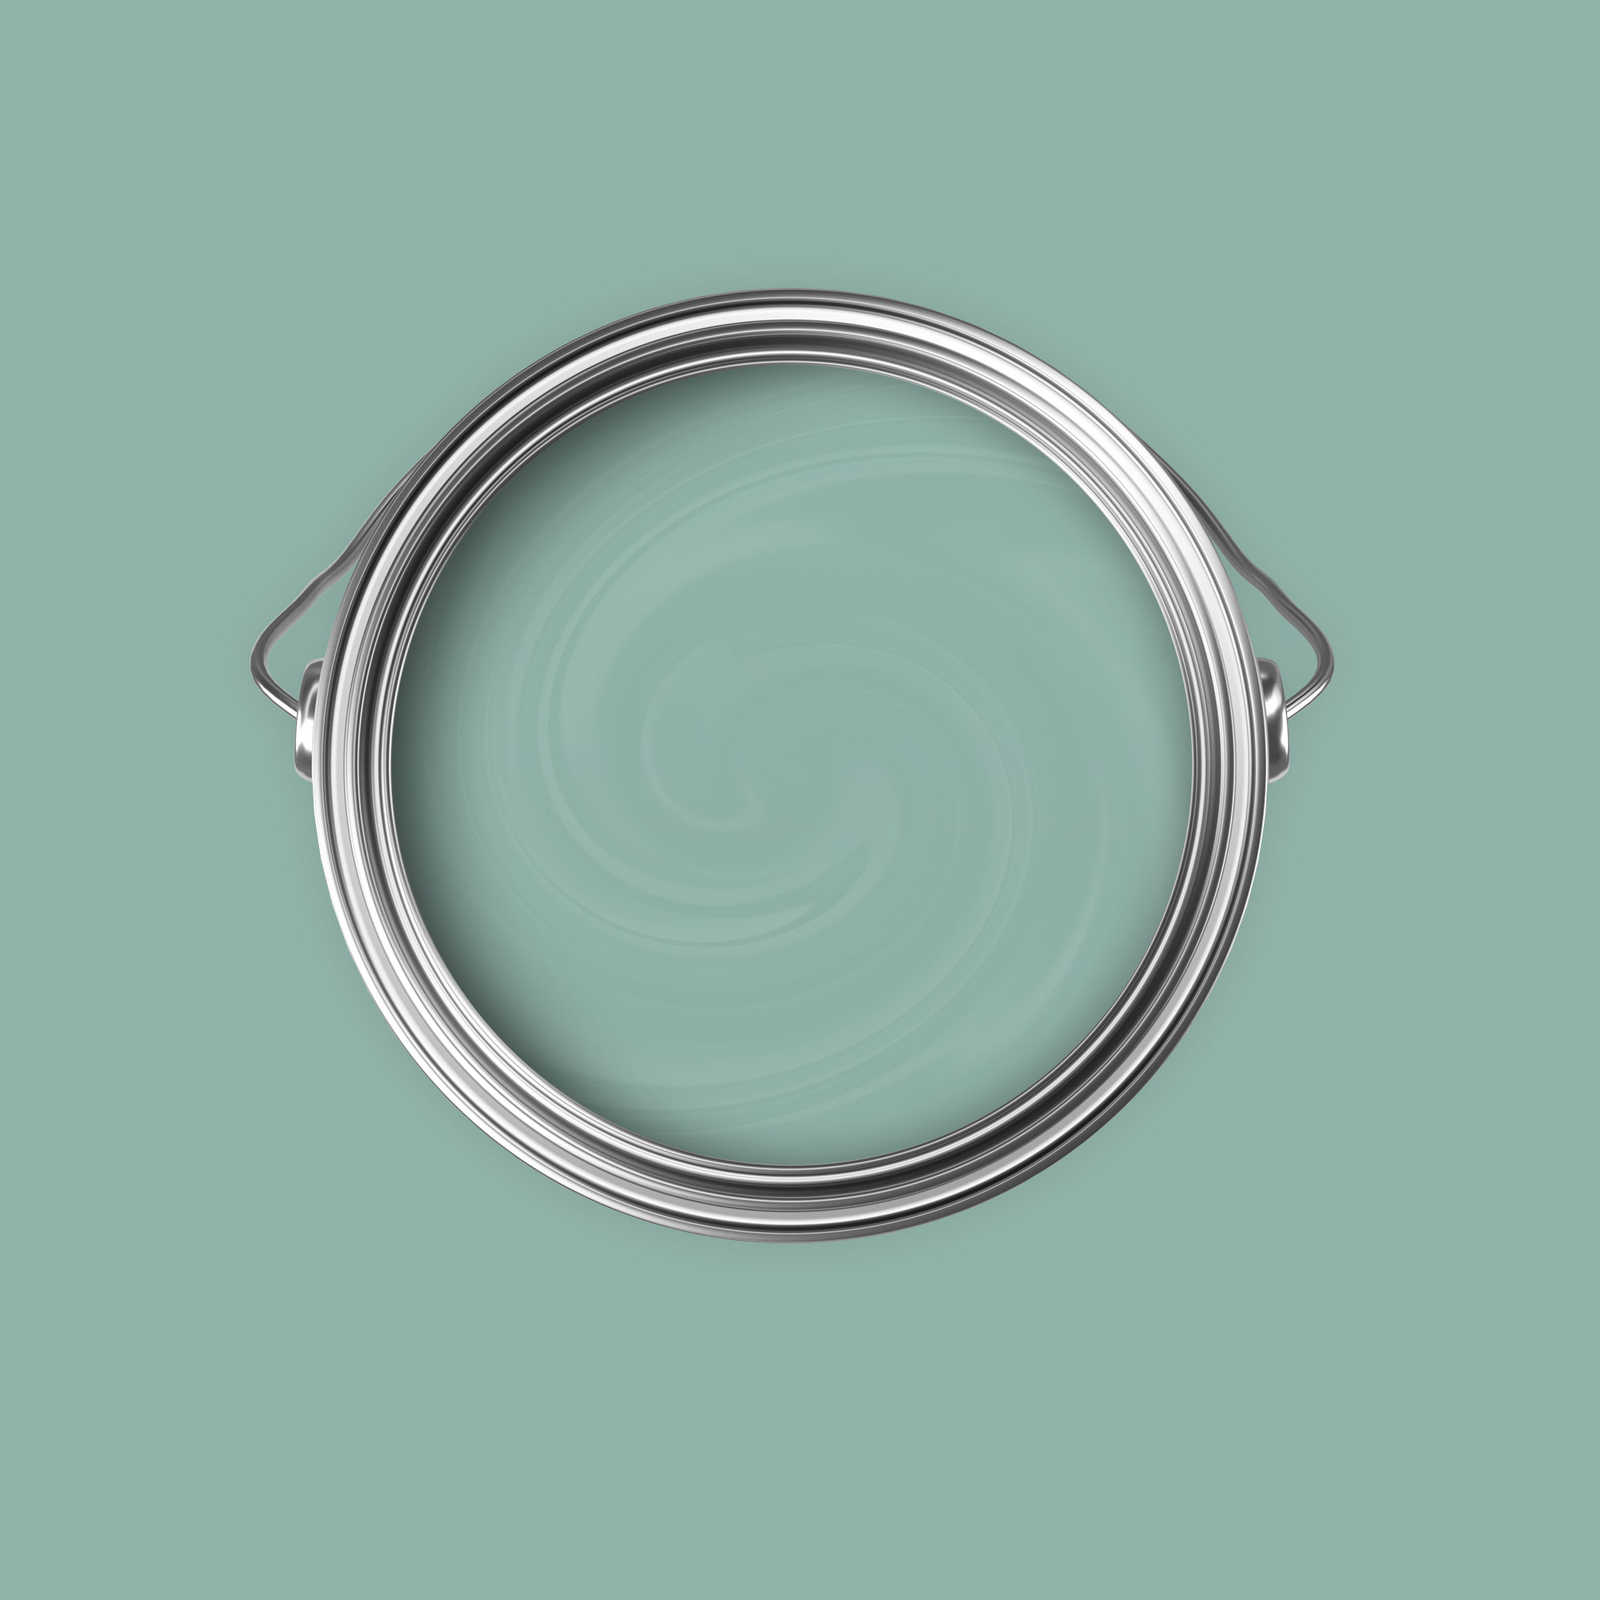             Premium Wandfarbe freundliches Jadegrün »Sweet Sage« NW402 – 5 Liter
        